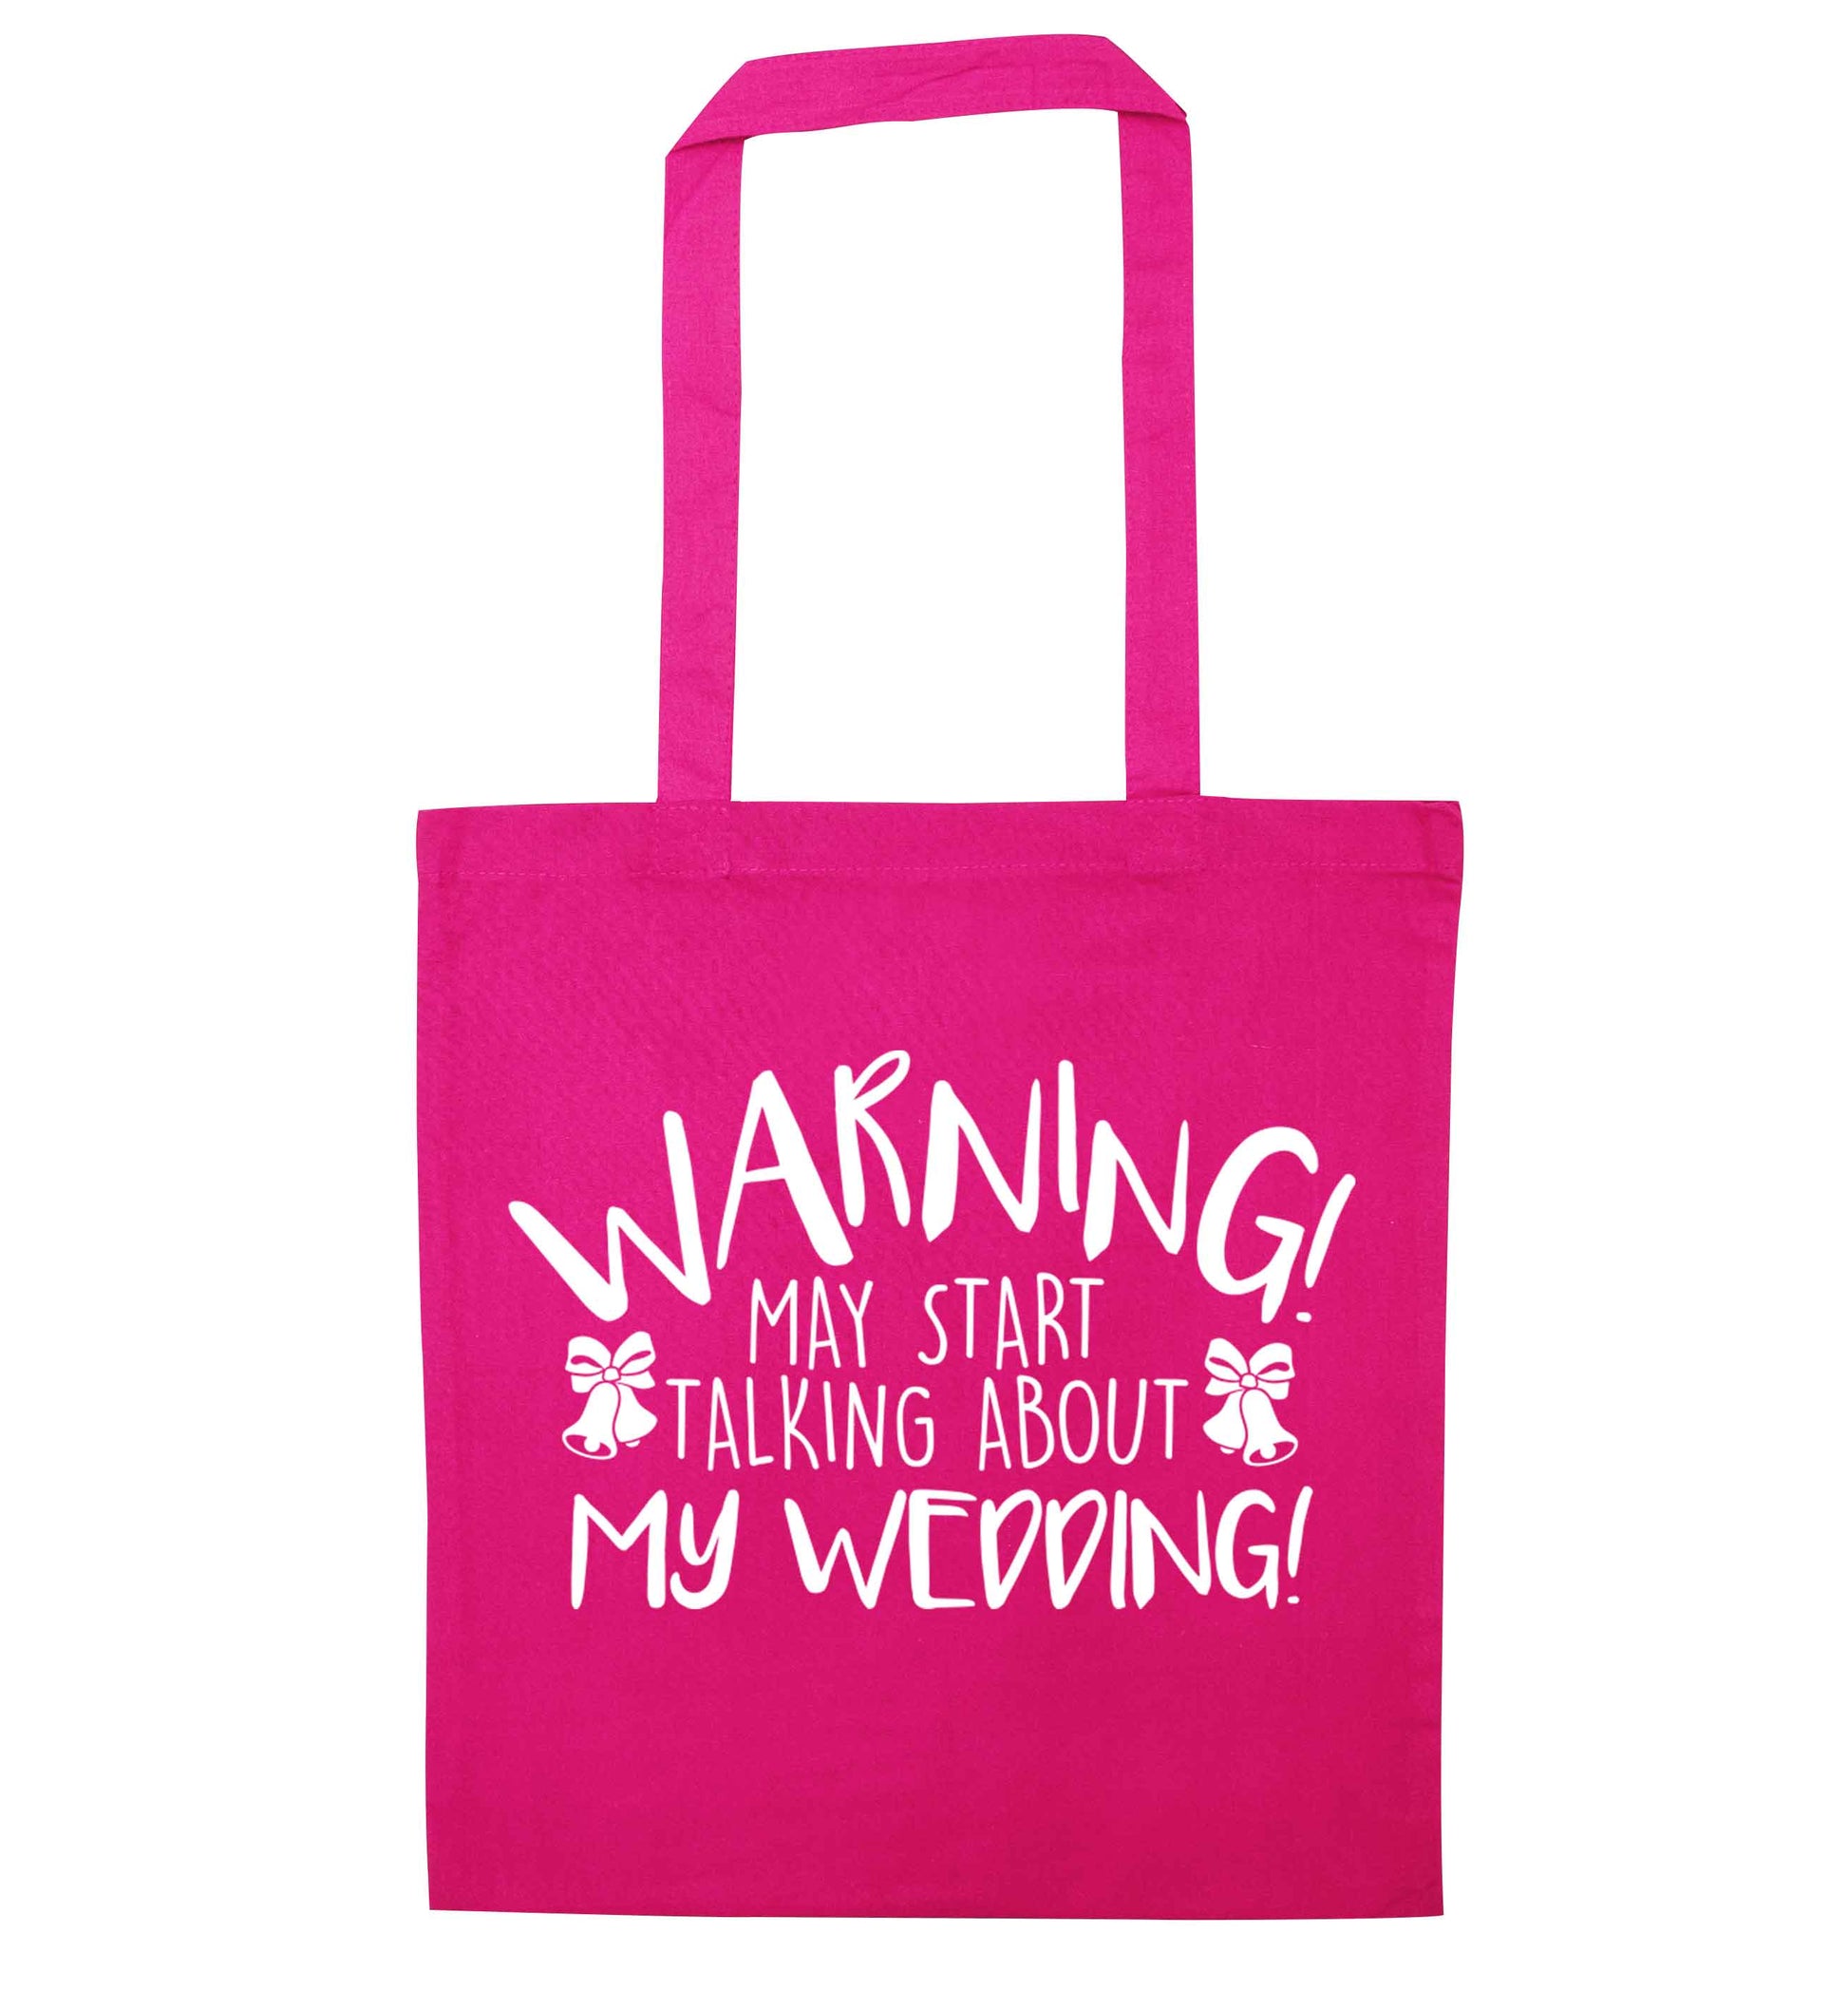 Warning may start talking about my wedding! pink tote bag